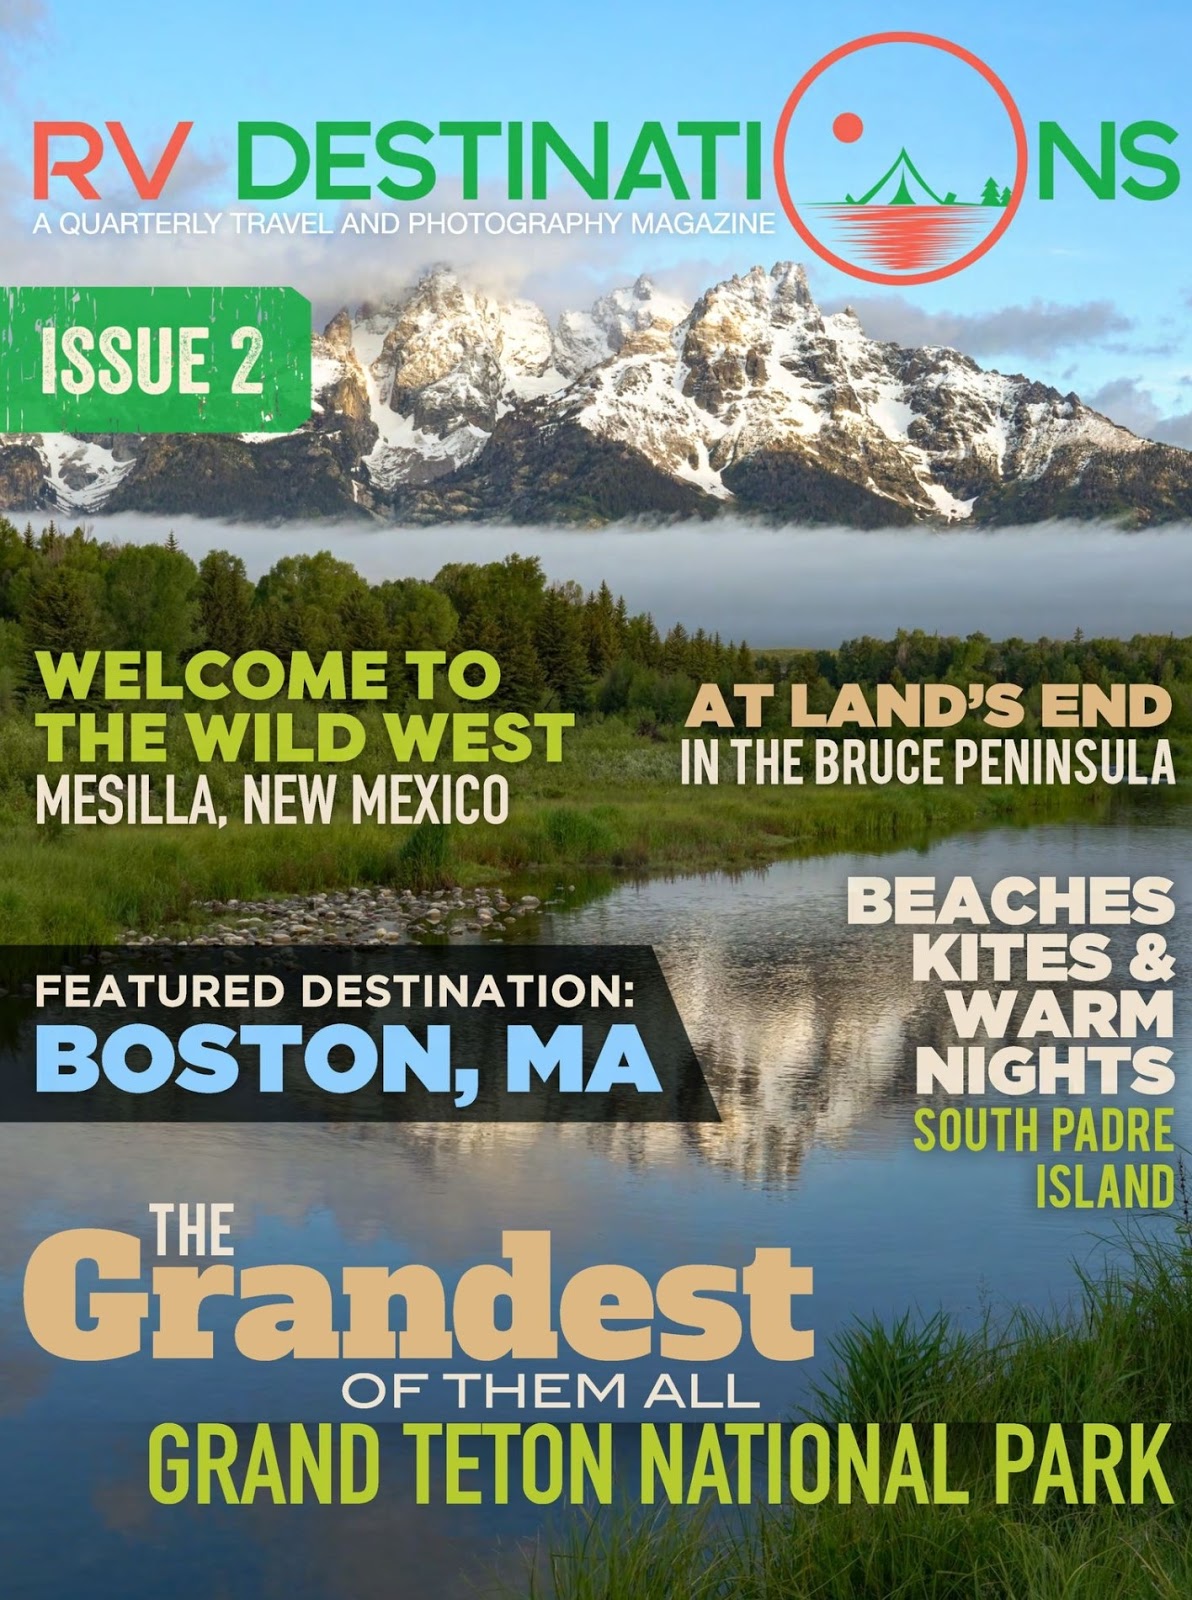 RV Destinations Magazine – Free Online Download of Issue #2